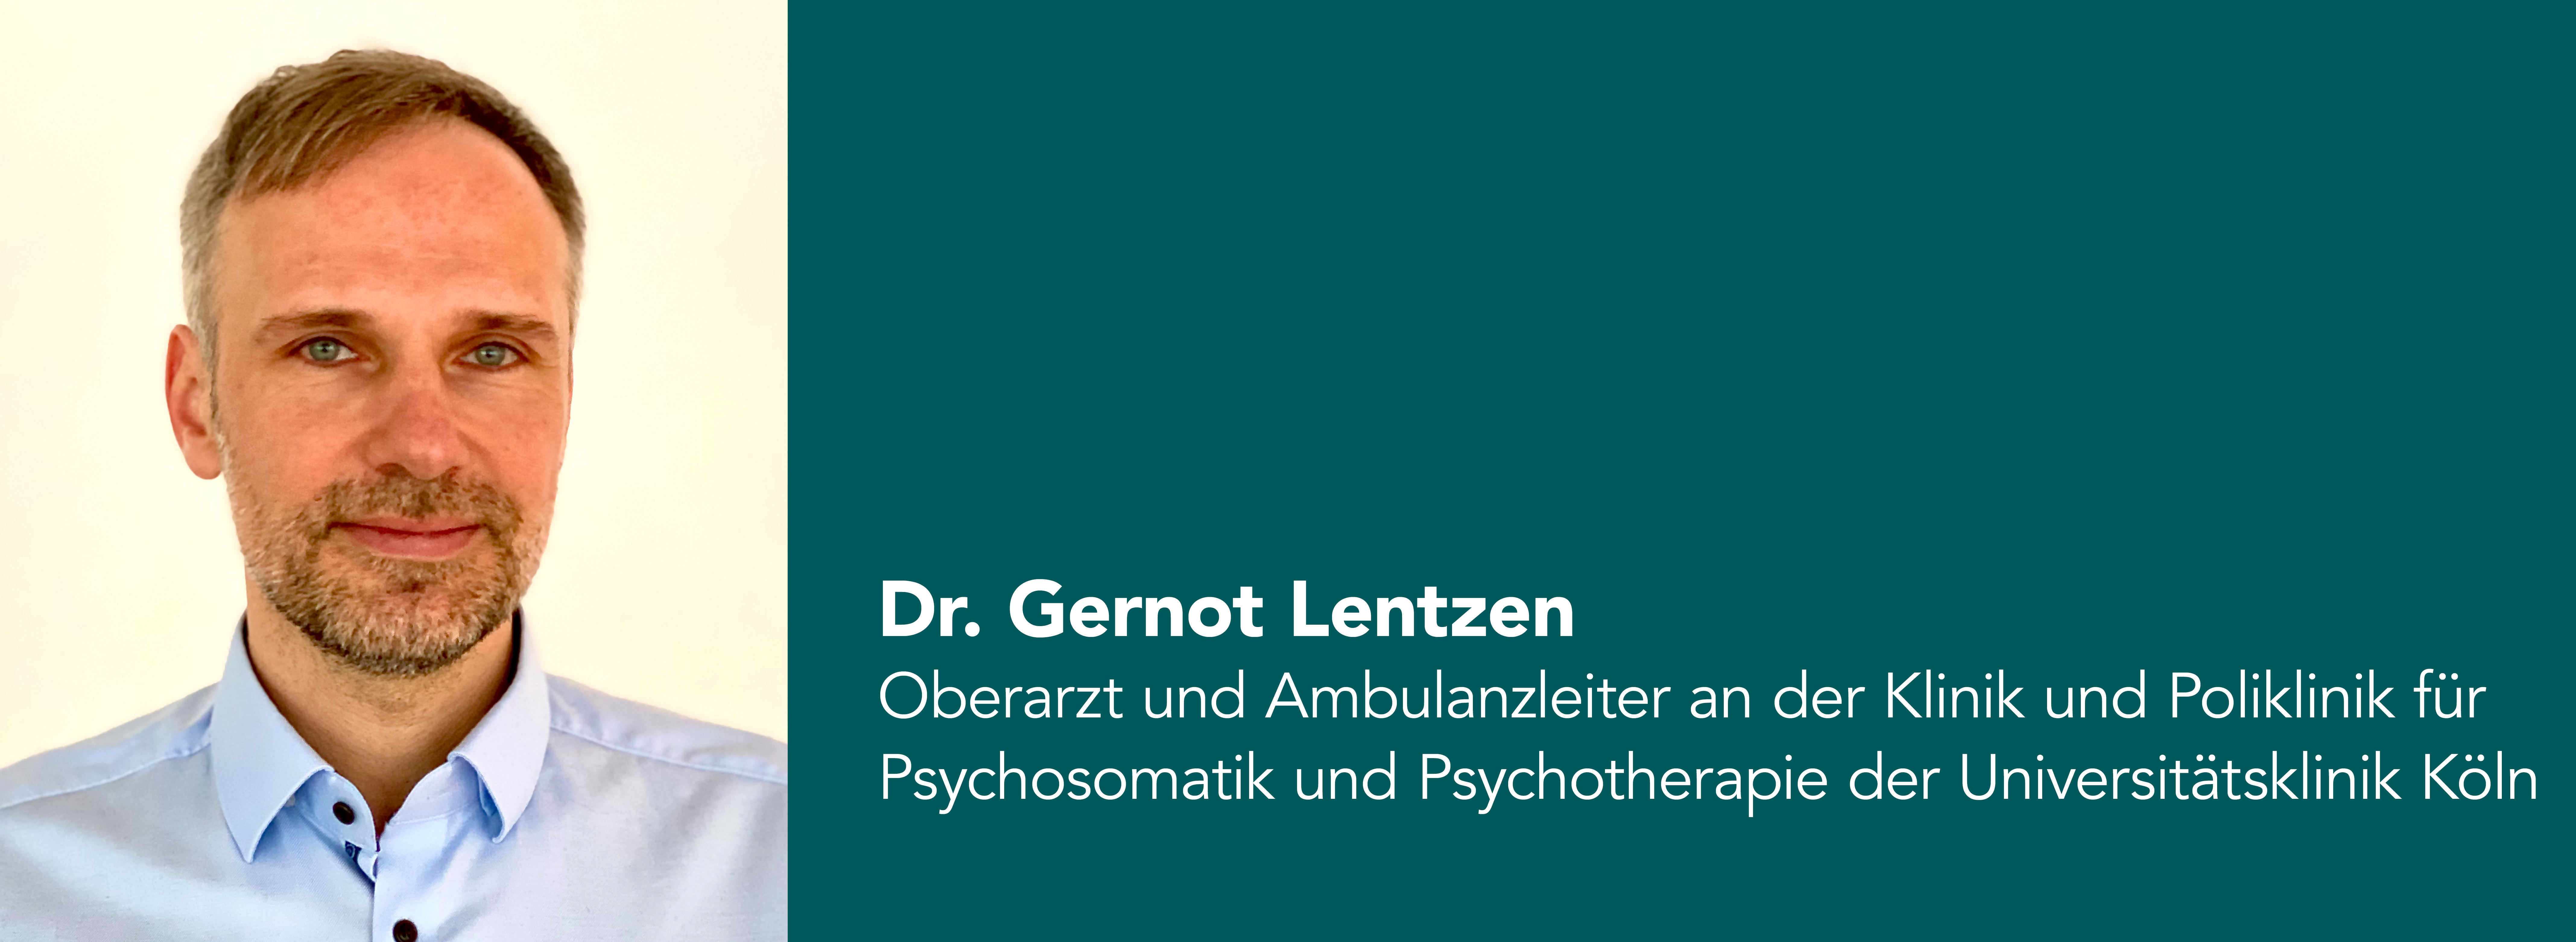 Gernot Lentzen, Oberarzt und Ambulanzleiter an der Universitätsklinik Köln